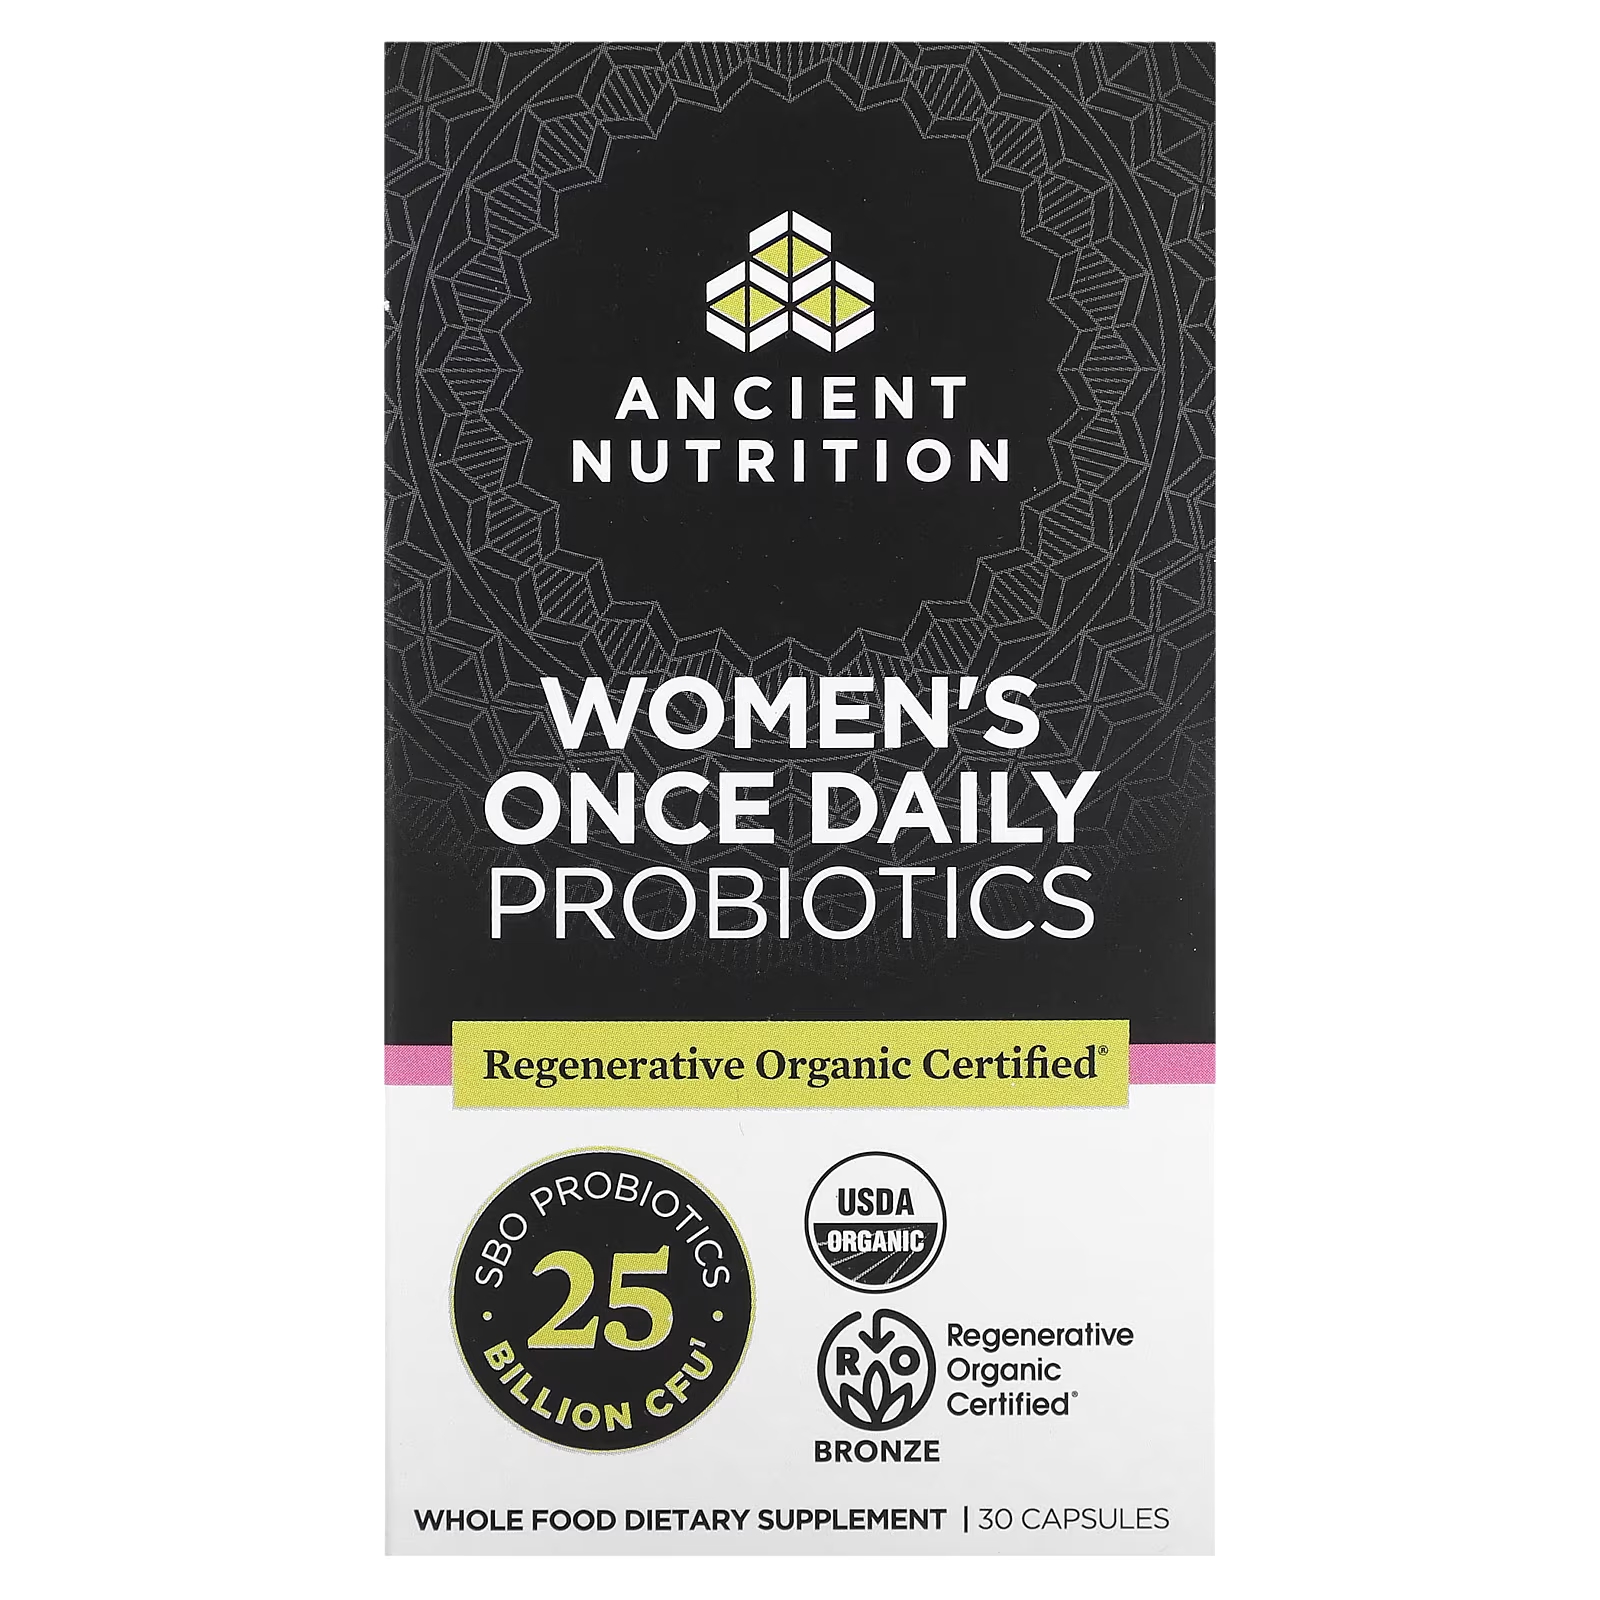 Пробиотики для женщин Ancient Nutrition один раз в день, 30 капсул